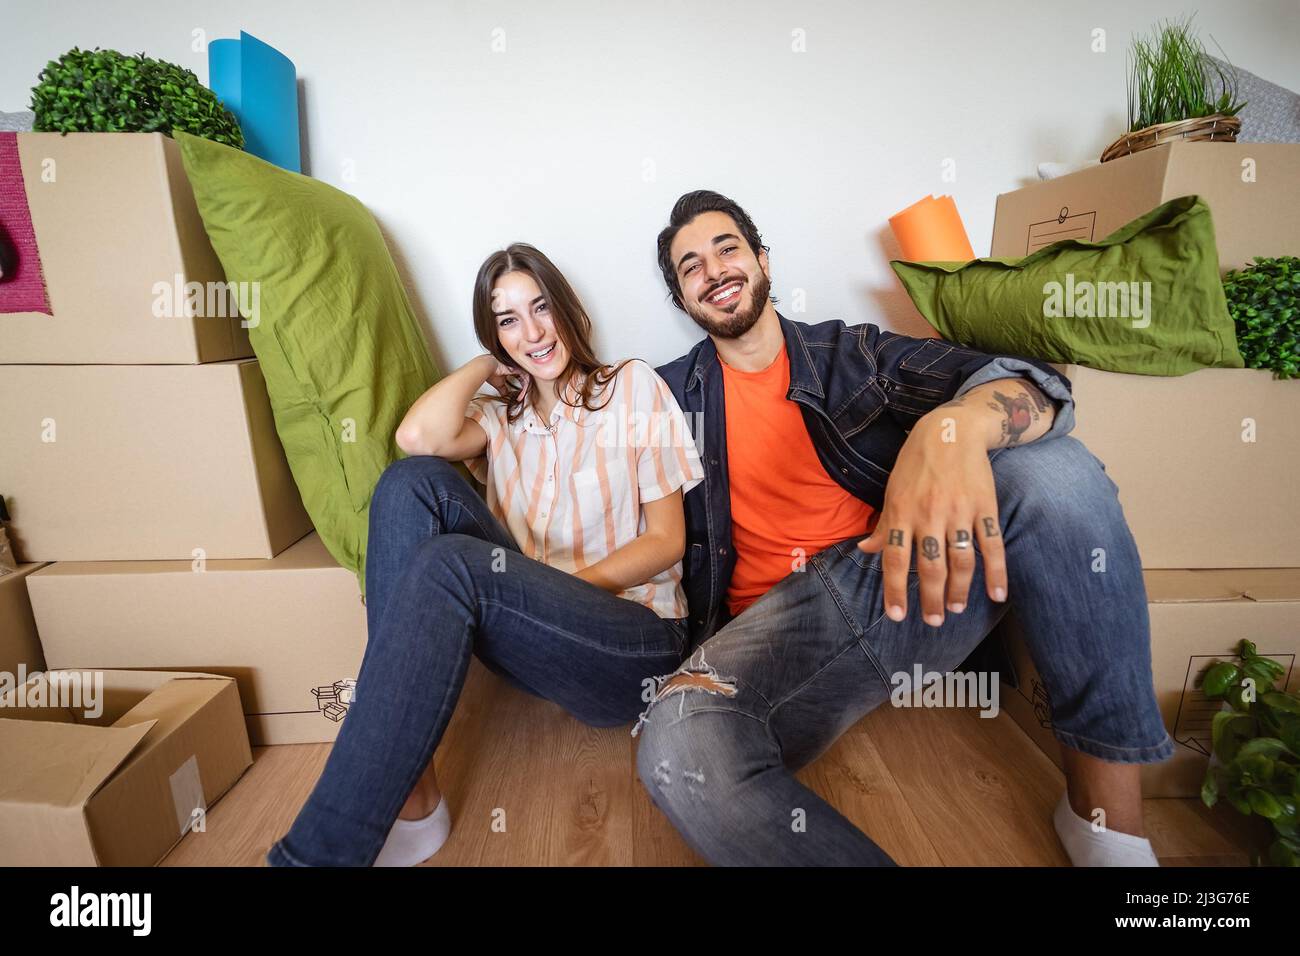 Glückliches junges Paar, das zum ersten Mal in ein neues Zuhause zieht - Ändern Sie den Tag der Wohnung und das Lifestyle-Konzept für junge Menschen Stockfoto